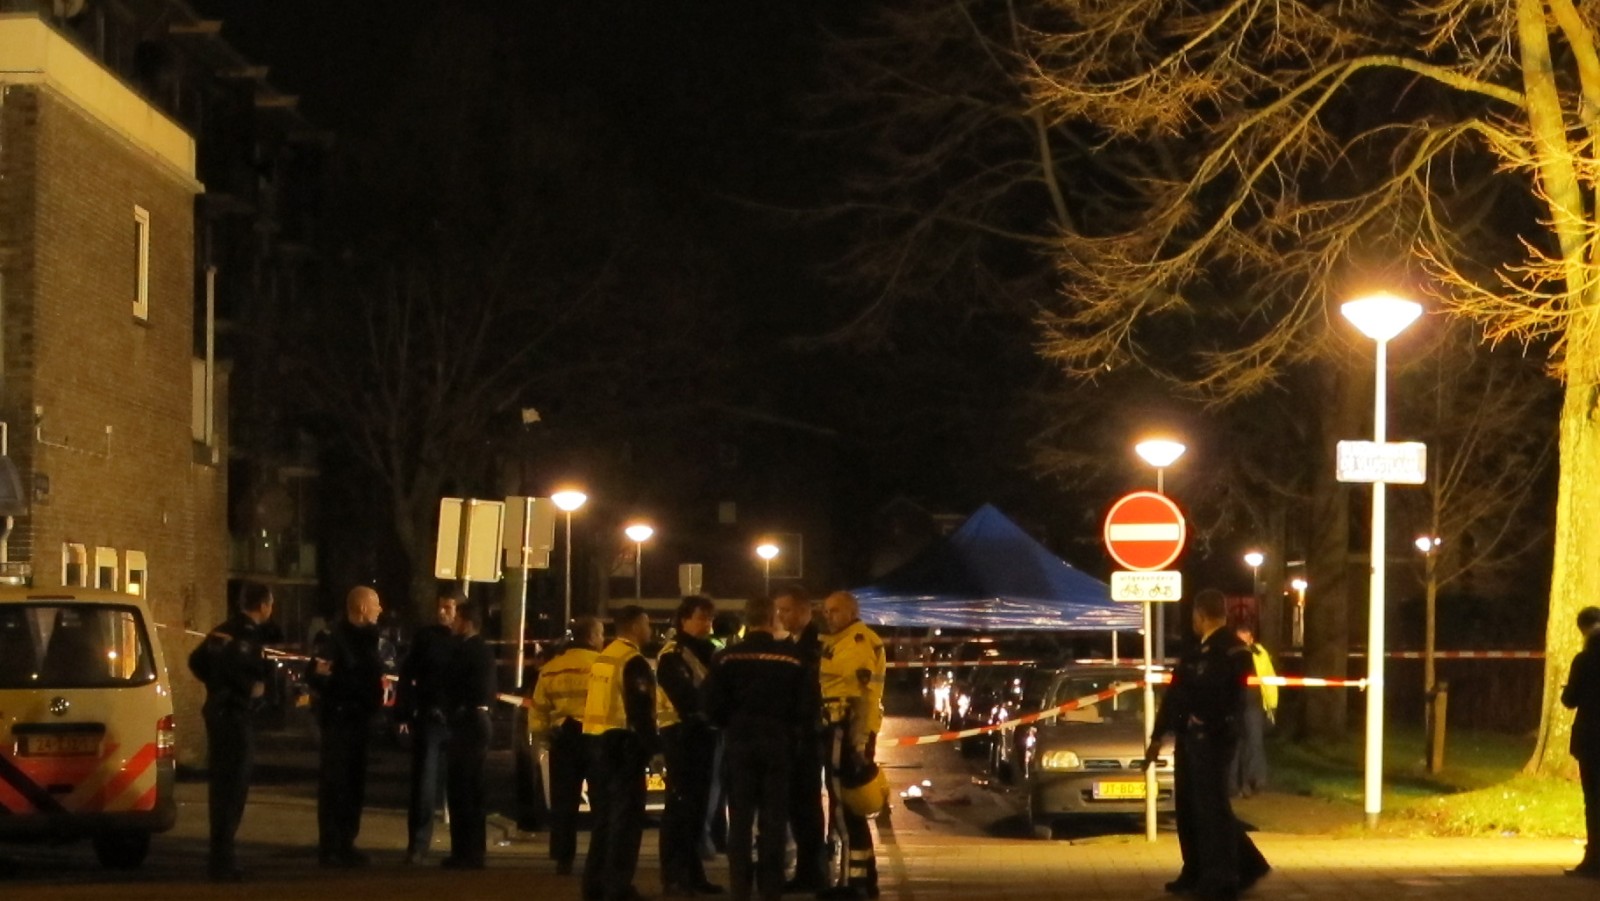 Update: Slachtoffer schietpartij in Slotermeer in ziekenhuis overleden